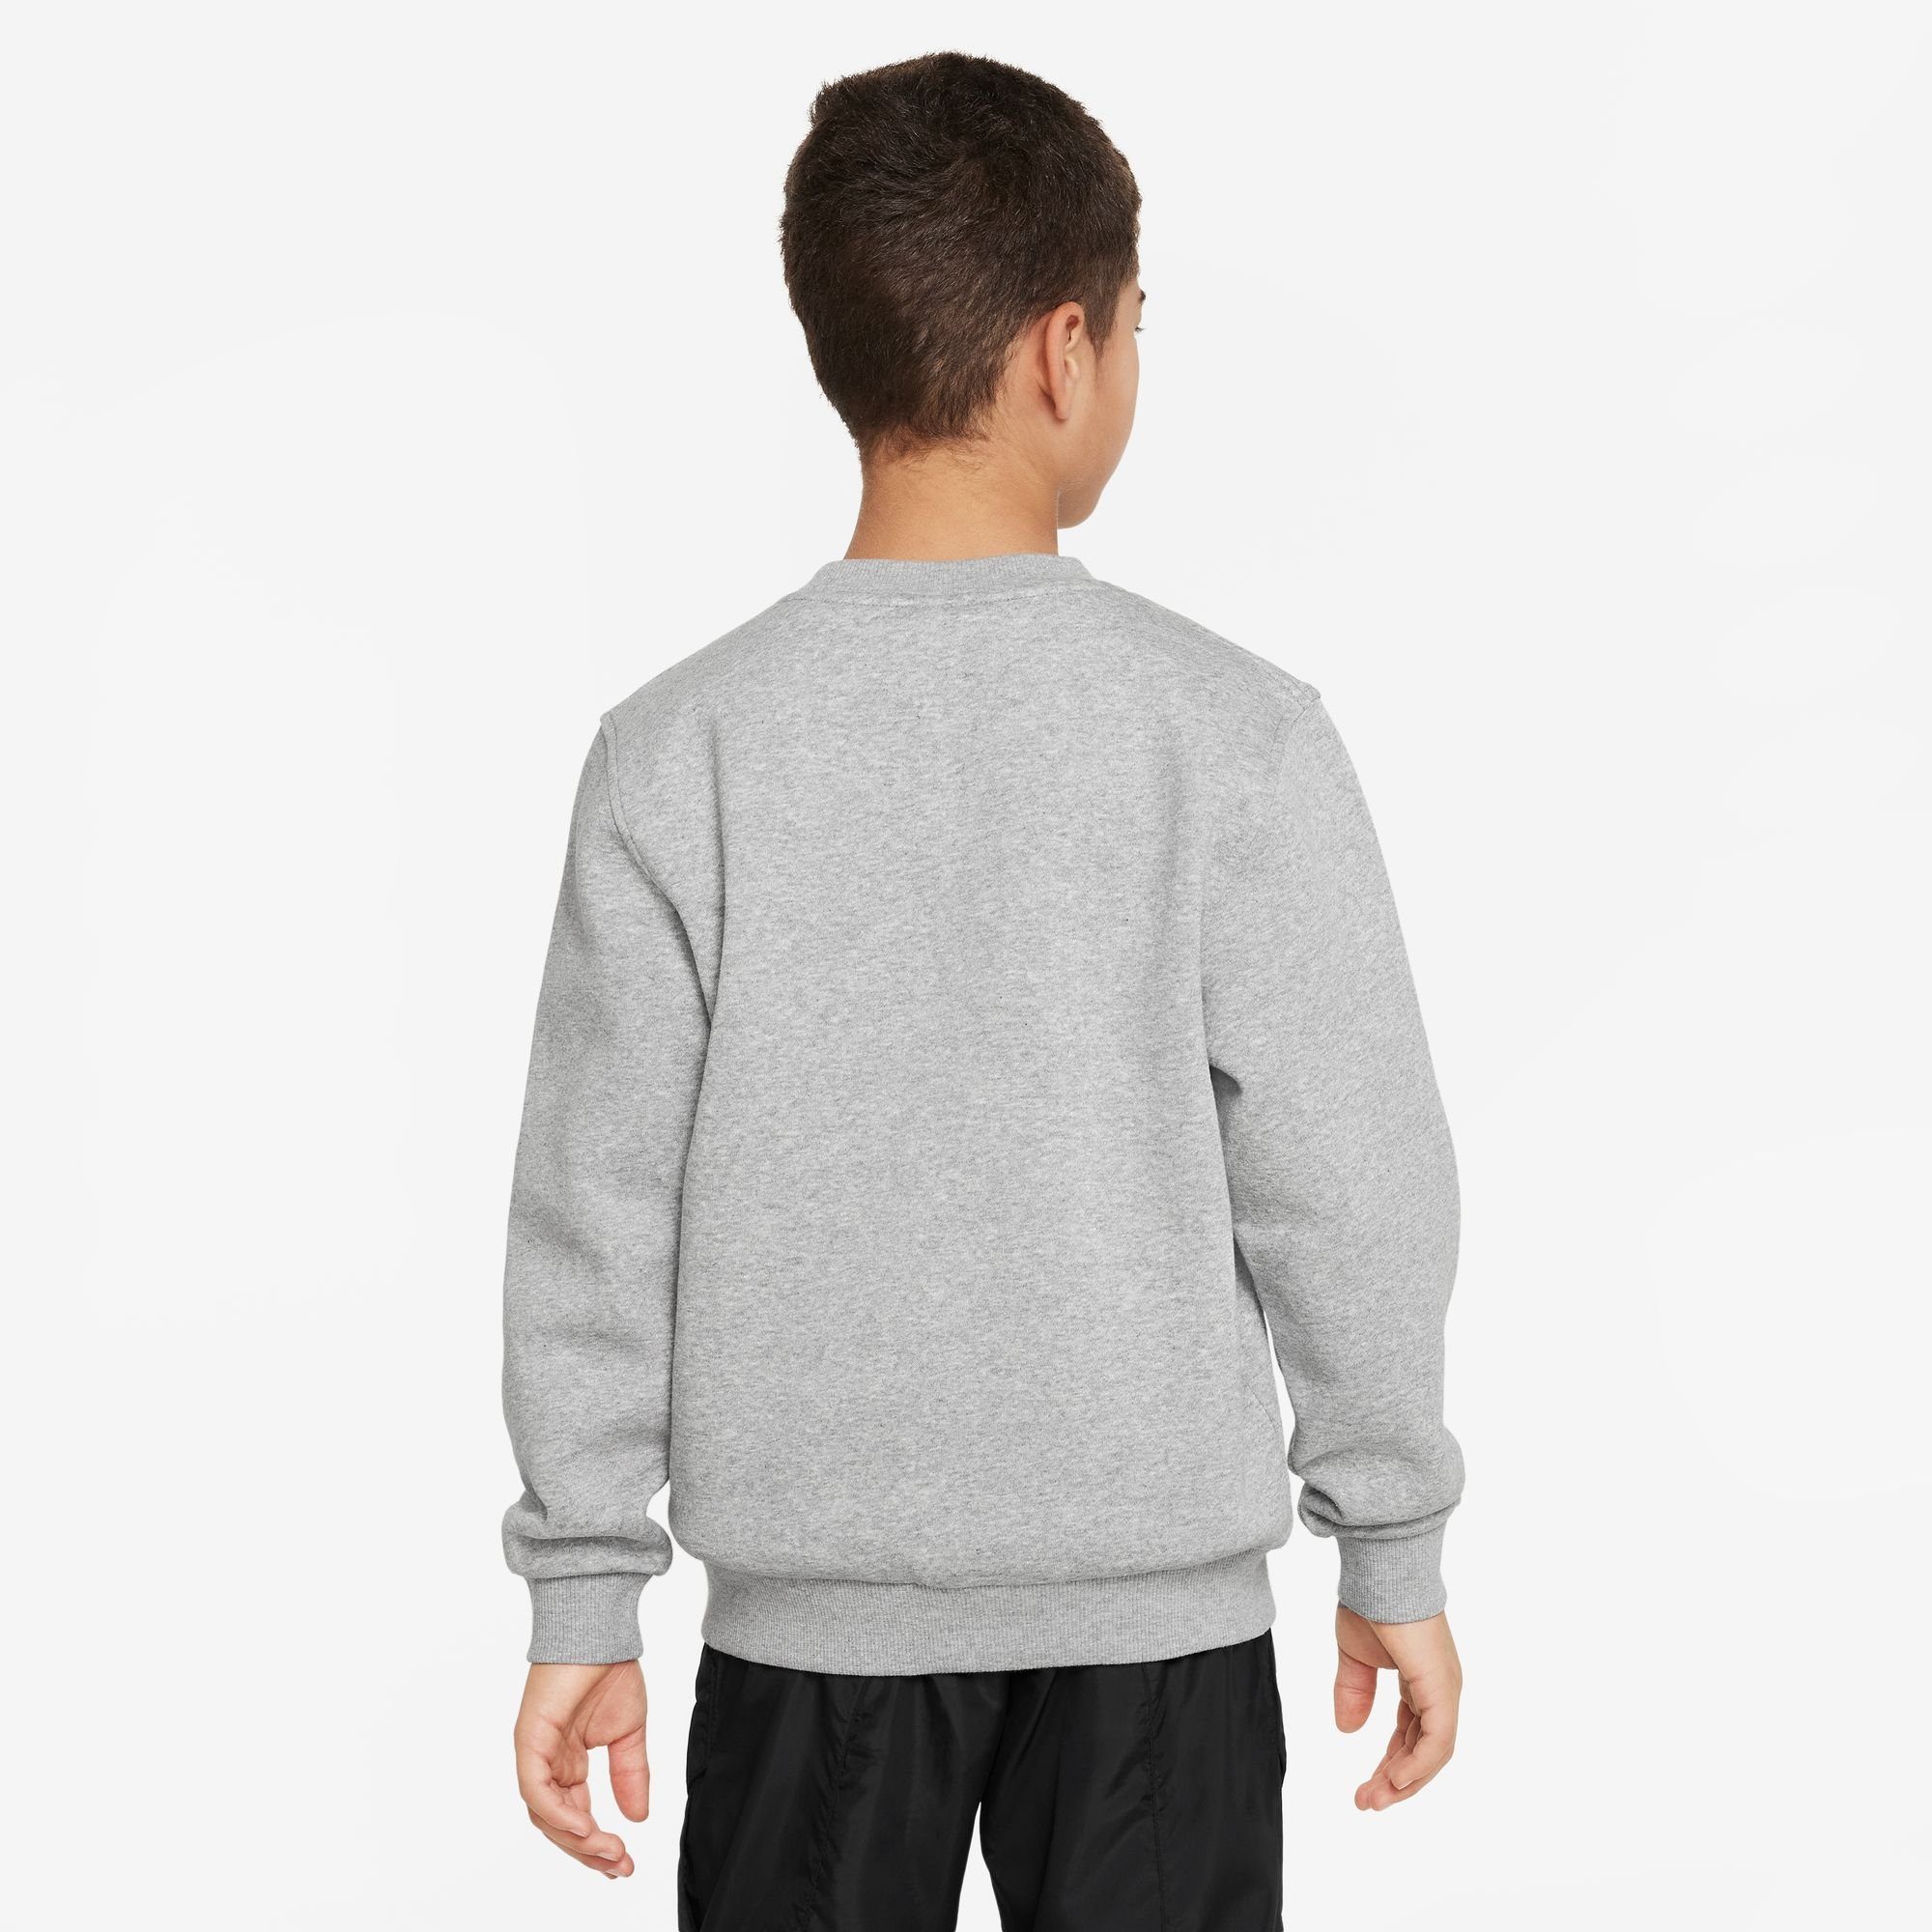 Sportswear HEATHER/WHITE KIDS' FLEECE GREY CLUB SWEATSHIRT BIG Sweatshirt DK Nike